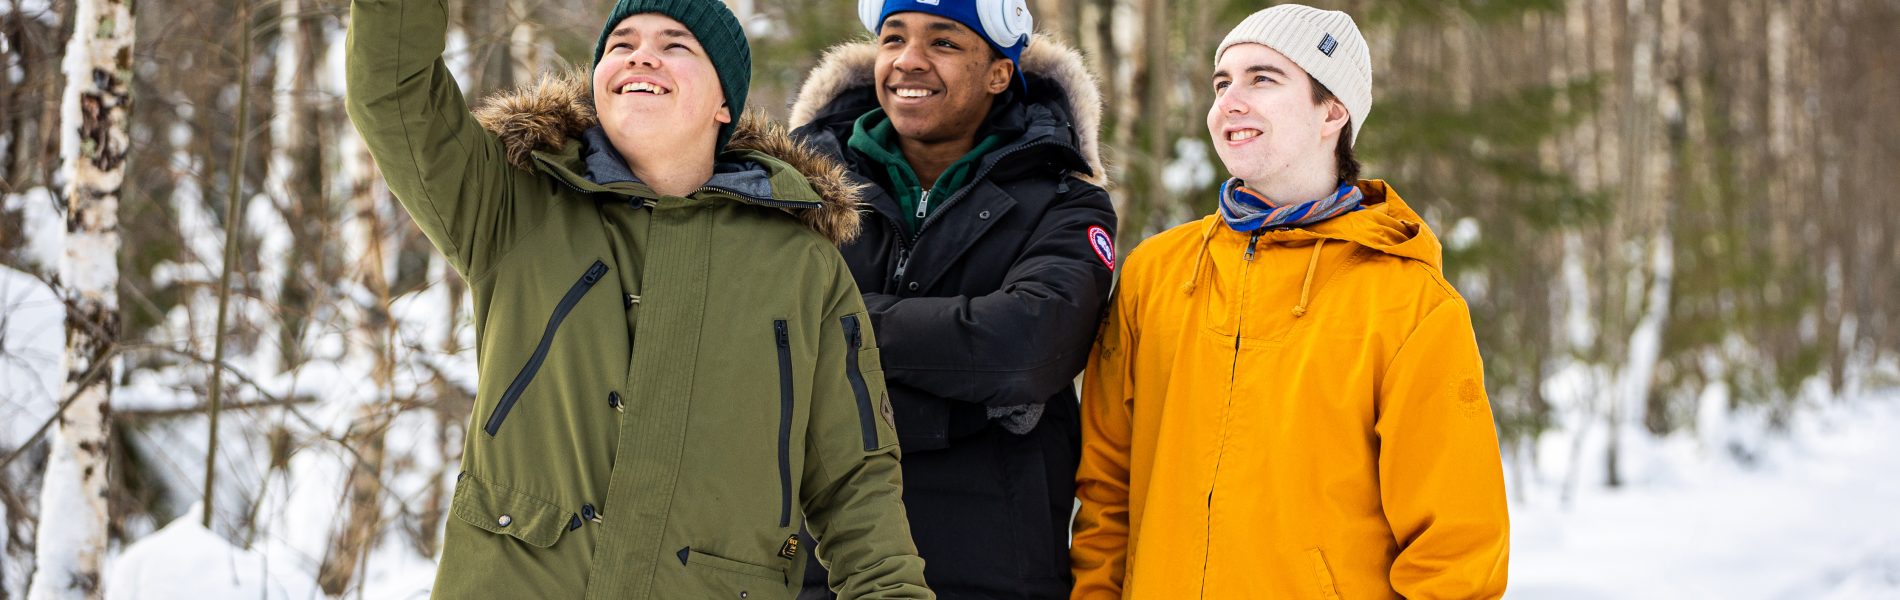 Kolme nuorta ottamassa selfietä lumisessa metsässä.